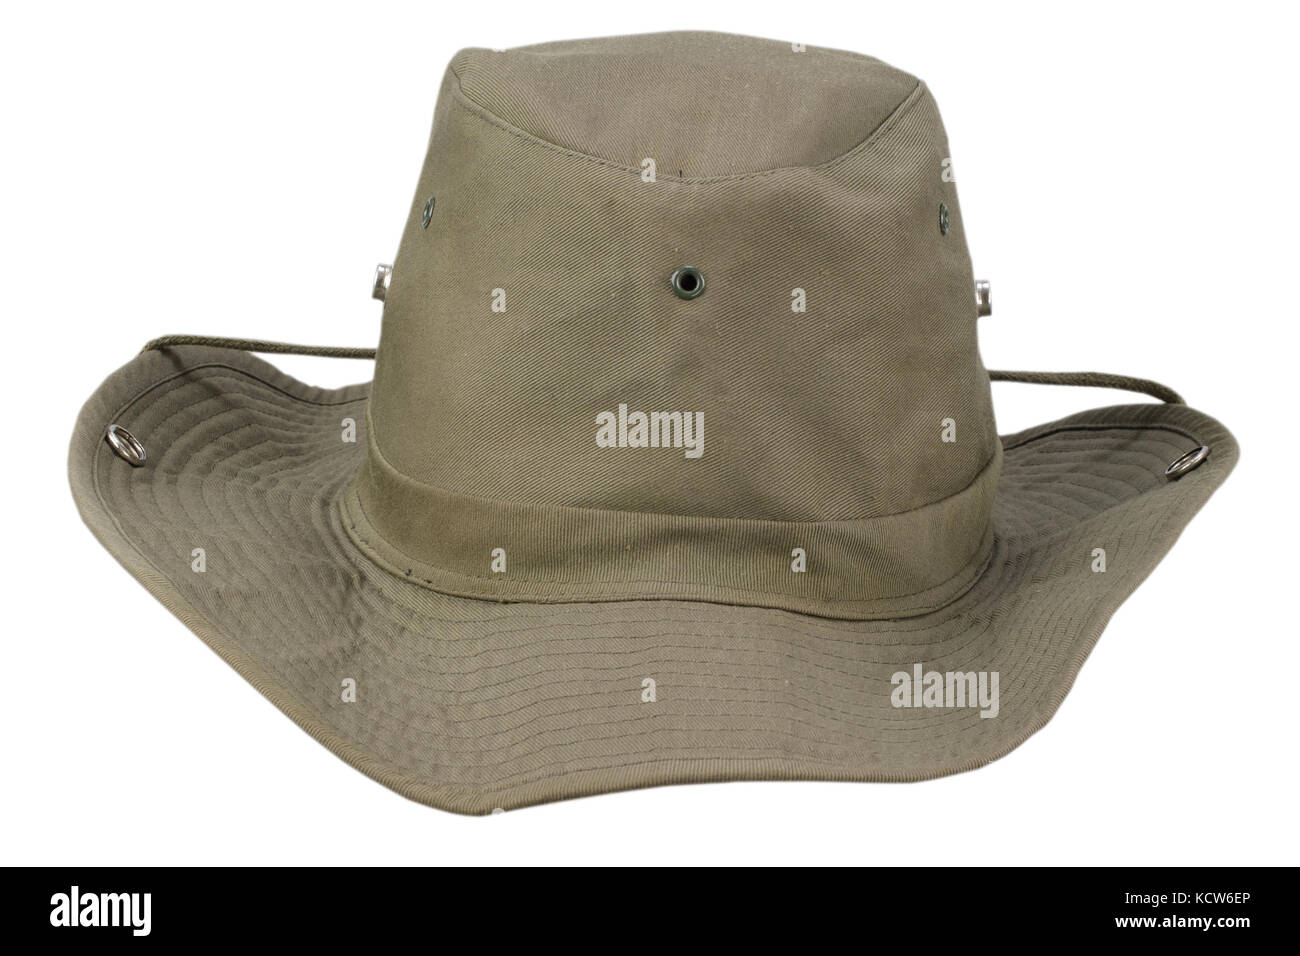 Sombrero de lluvia Imágenes recortadas de stock - Alamy